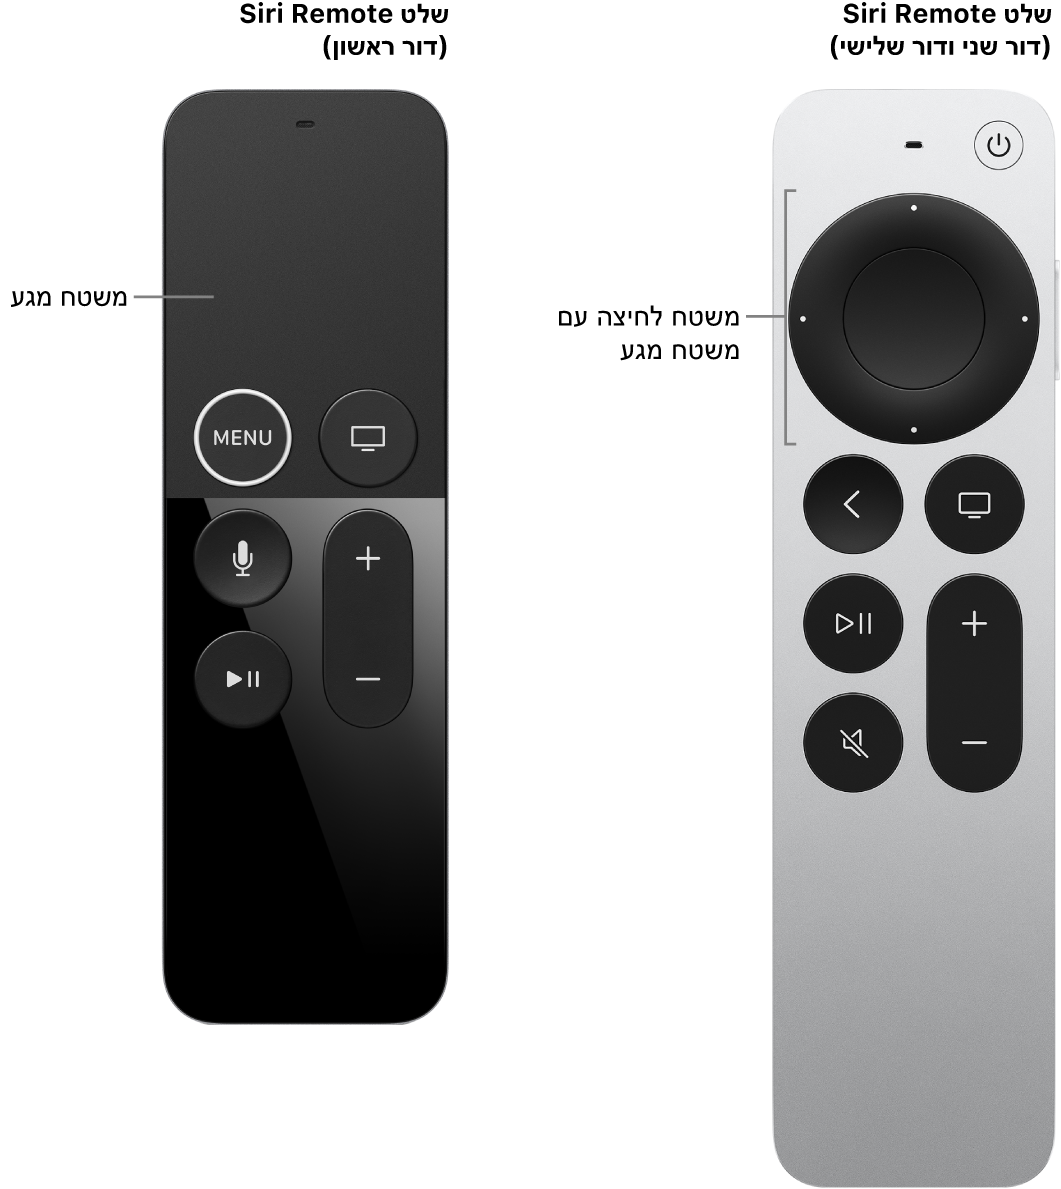 שלט Siri Remote (דור שני ושלישי) עם משטח לחיצה ו‑Siri Remote (דור ראשון) עם משטח מגע